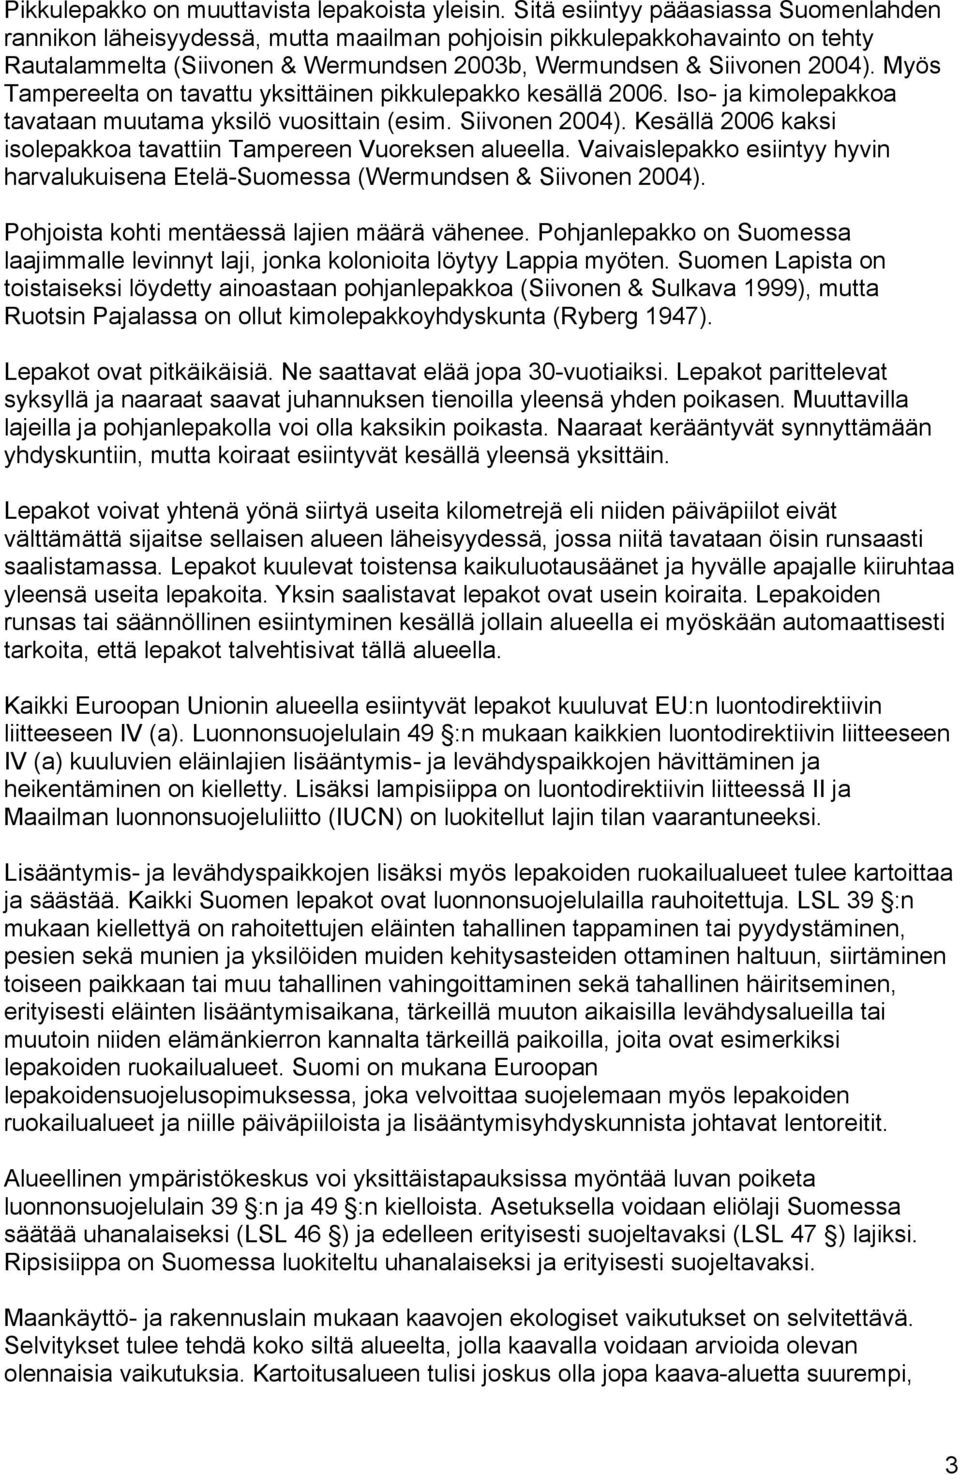 Myös Tampereelta on tavattu yksittäinen pikkulepakko kesällä 2006. Iso- ja kimolepakkoa tavataan muutama yksilö vuosittain (esim. Siivonen 2004).